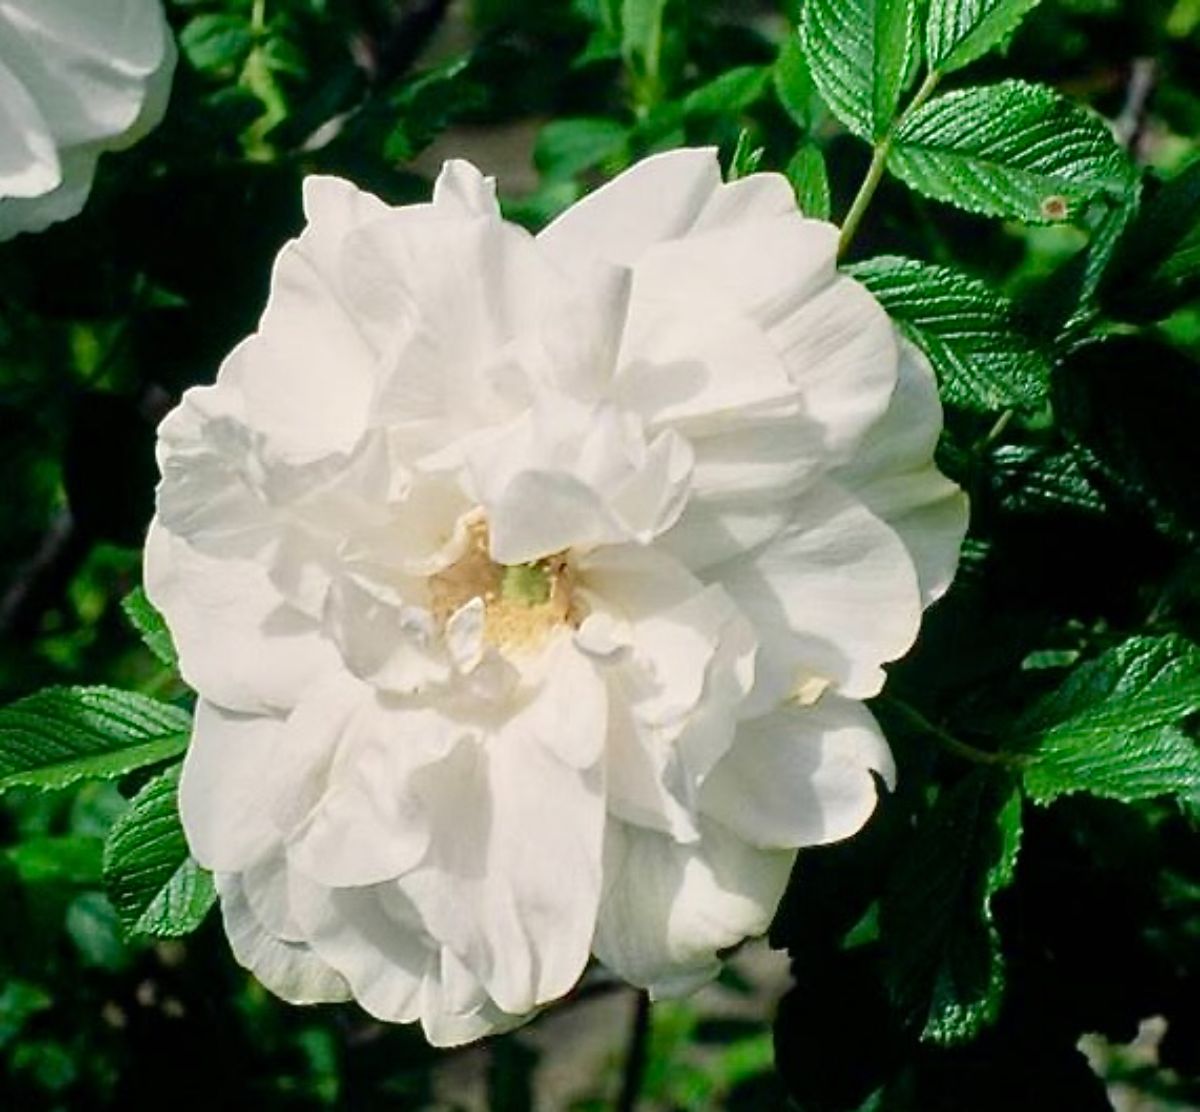 Blanc Double de Coubert rose in bloom